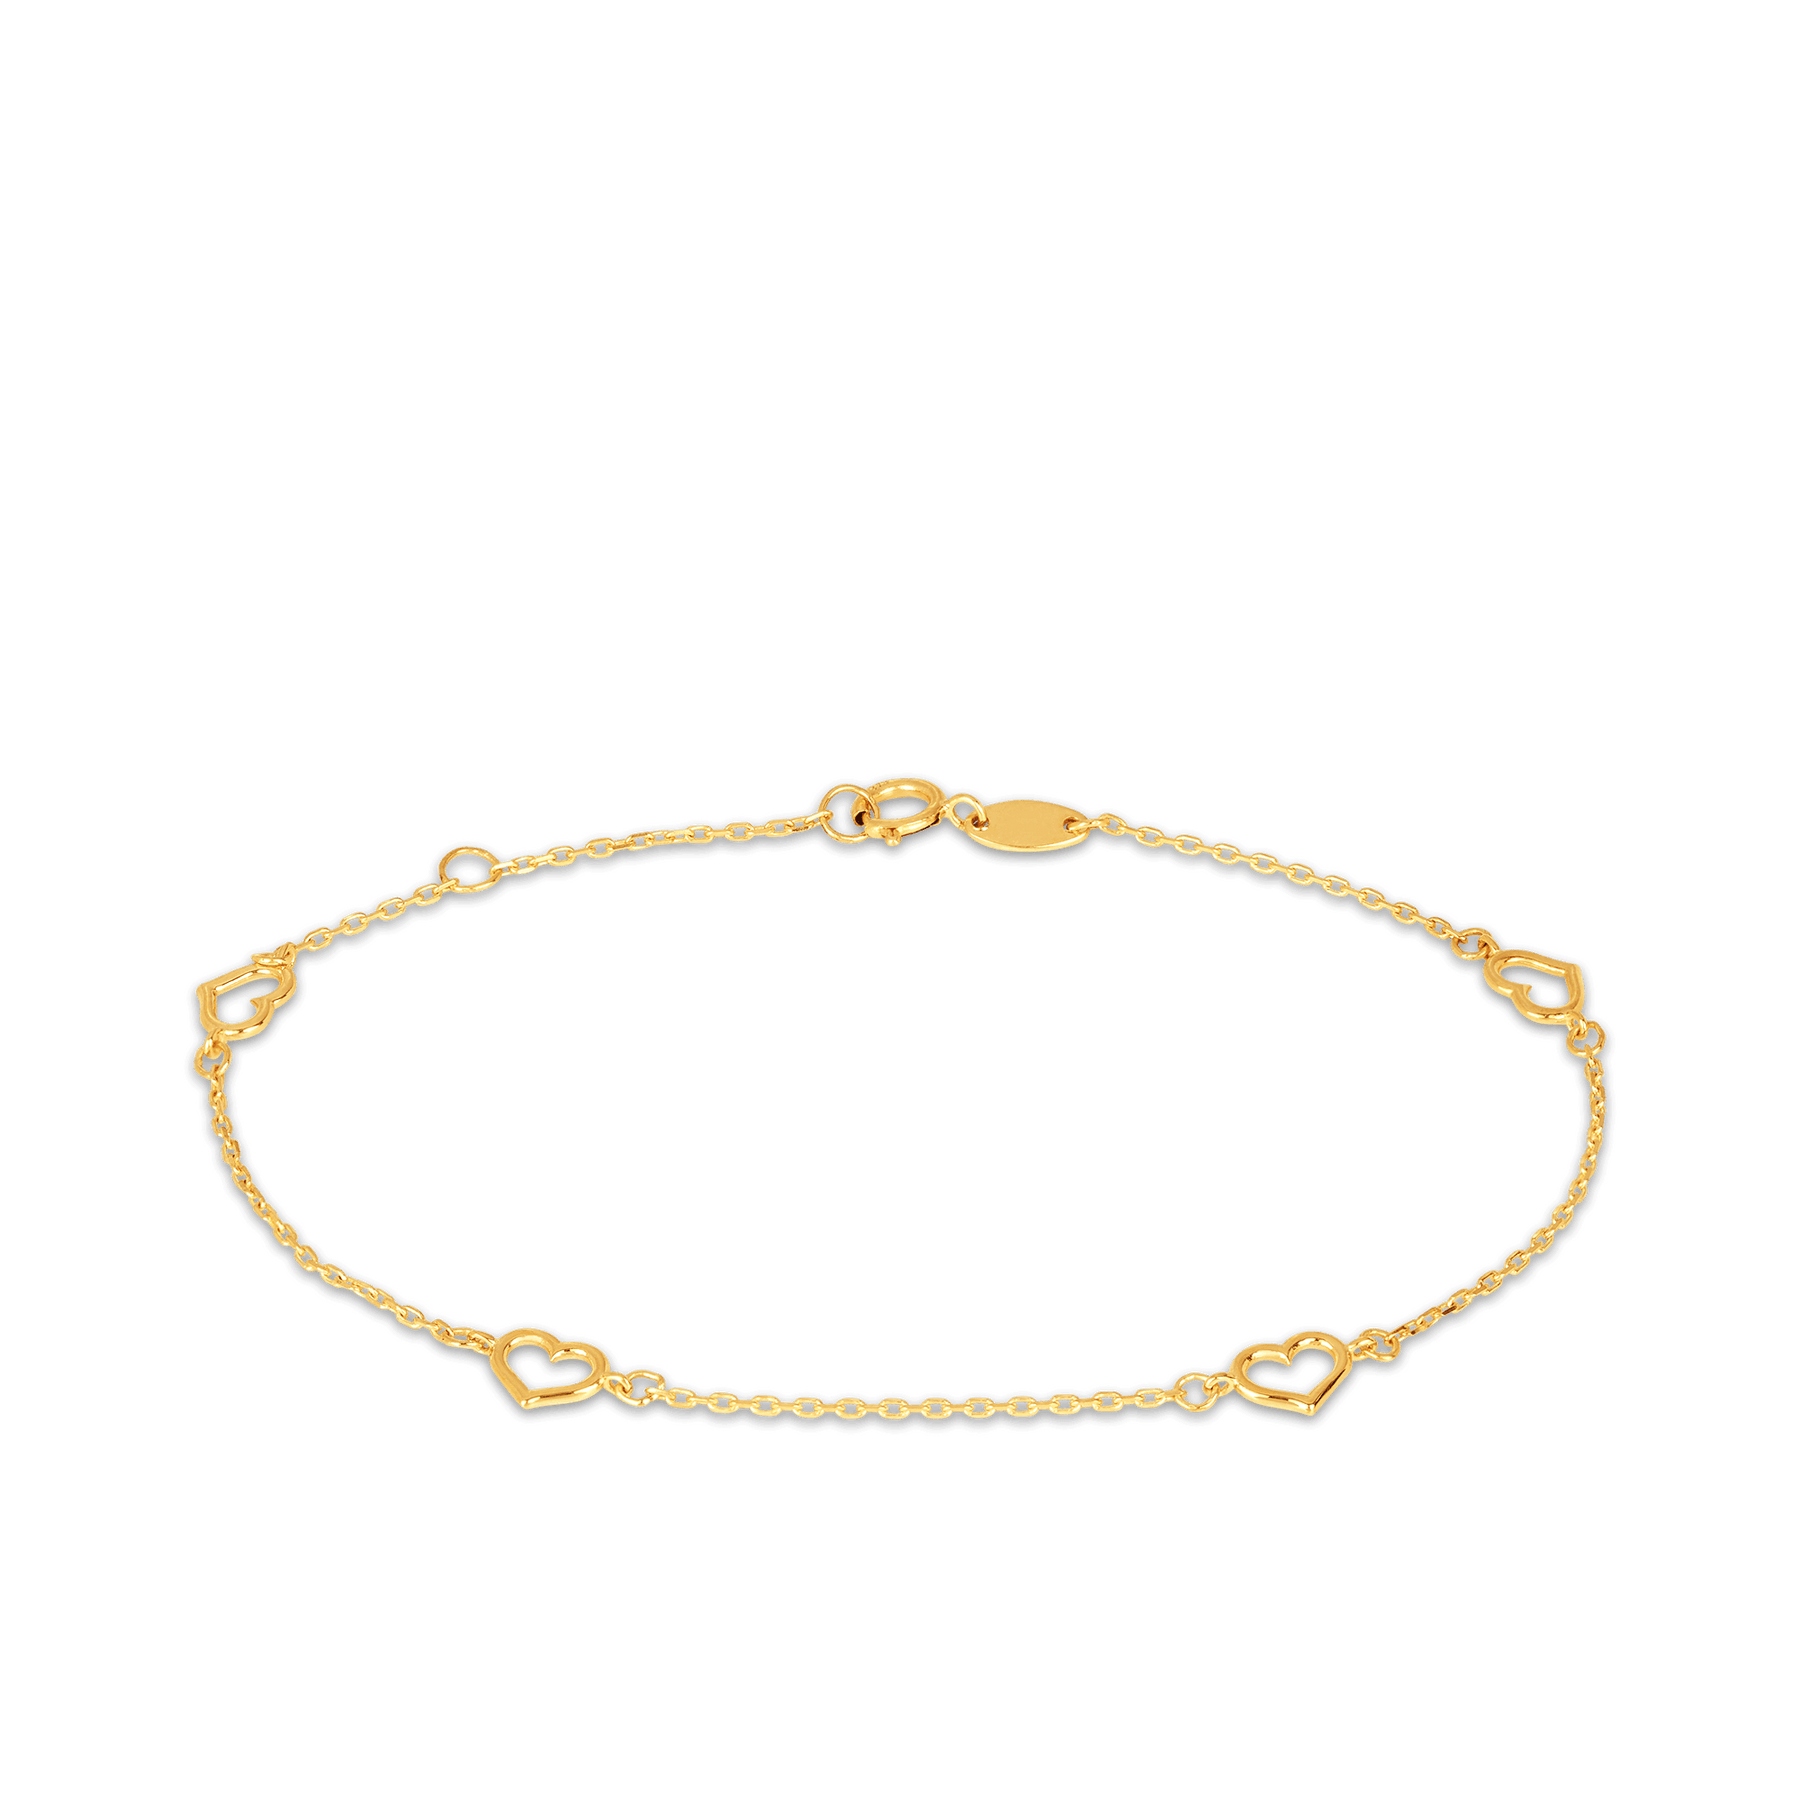 9ct Gold Belcher Bracelet Men's Solid Large Links Cubic Zirconia 85.8g 375  - AAA Polymer